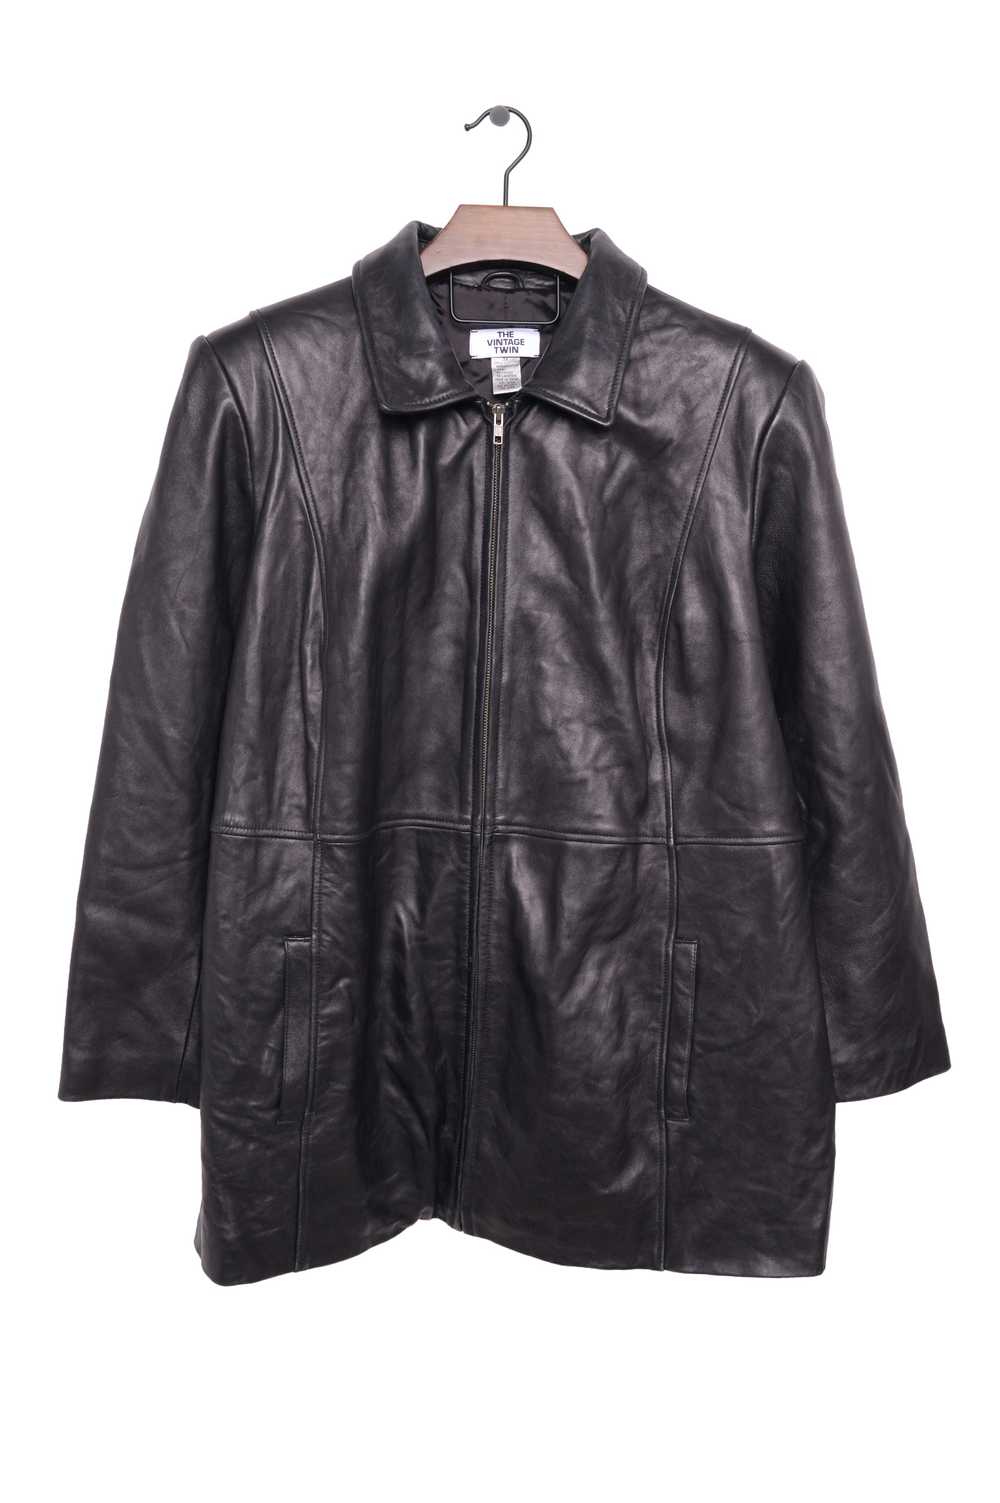 1990s Leather Jacket - image 1